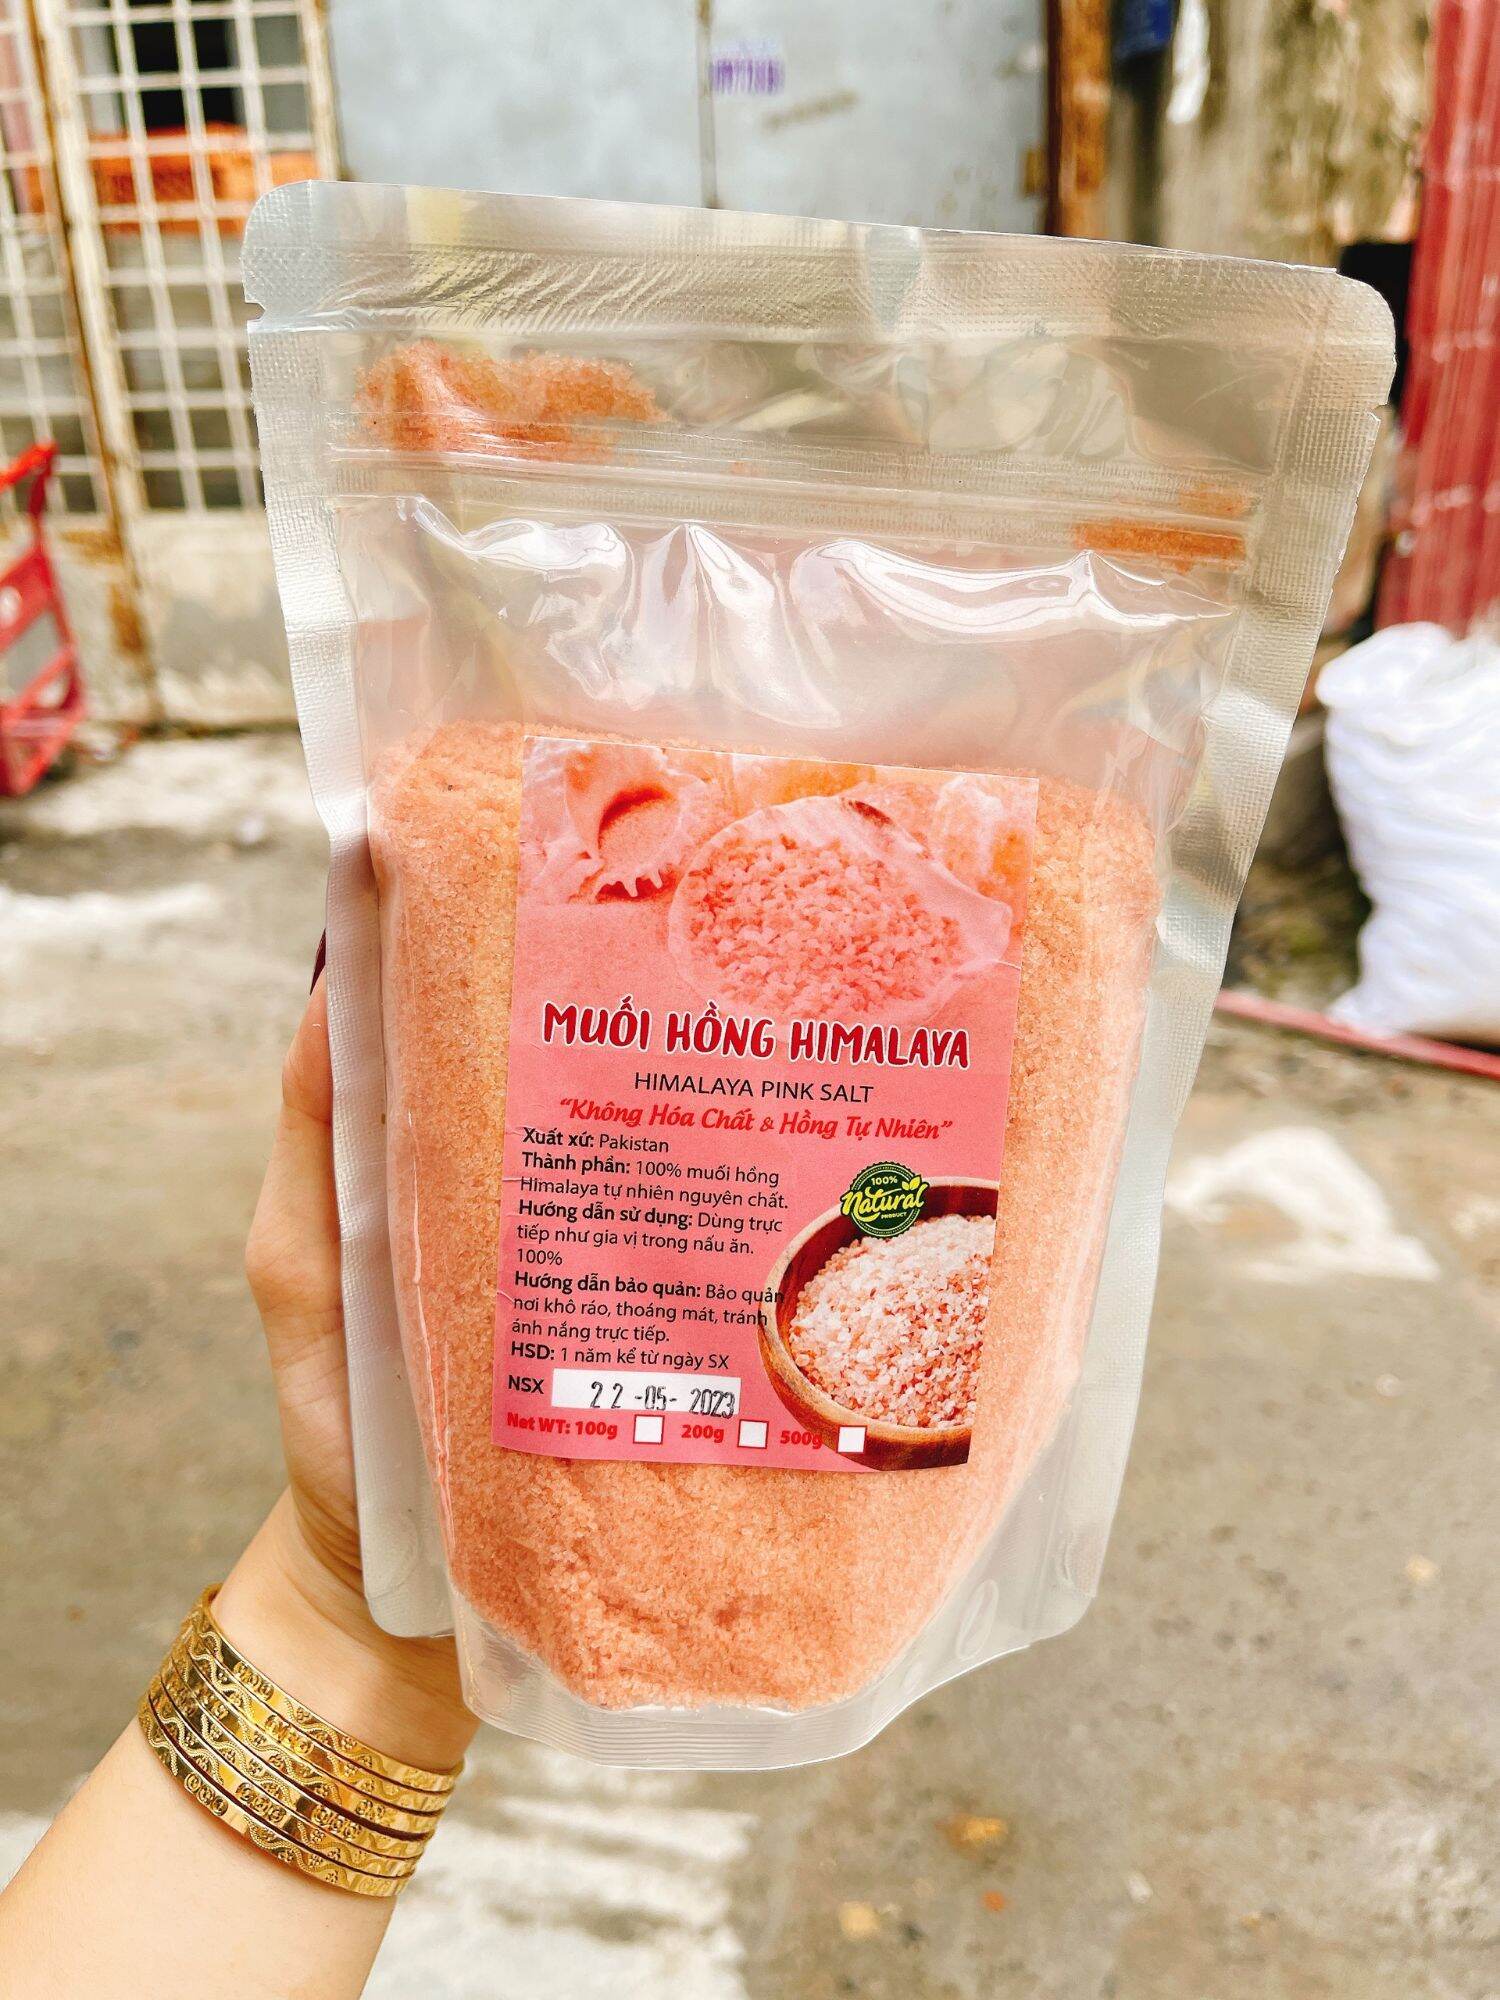 Muối hồng himalaya nguyên chất không hóa chất và hồng tự nhiên bịch 500gr.